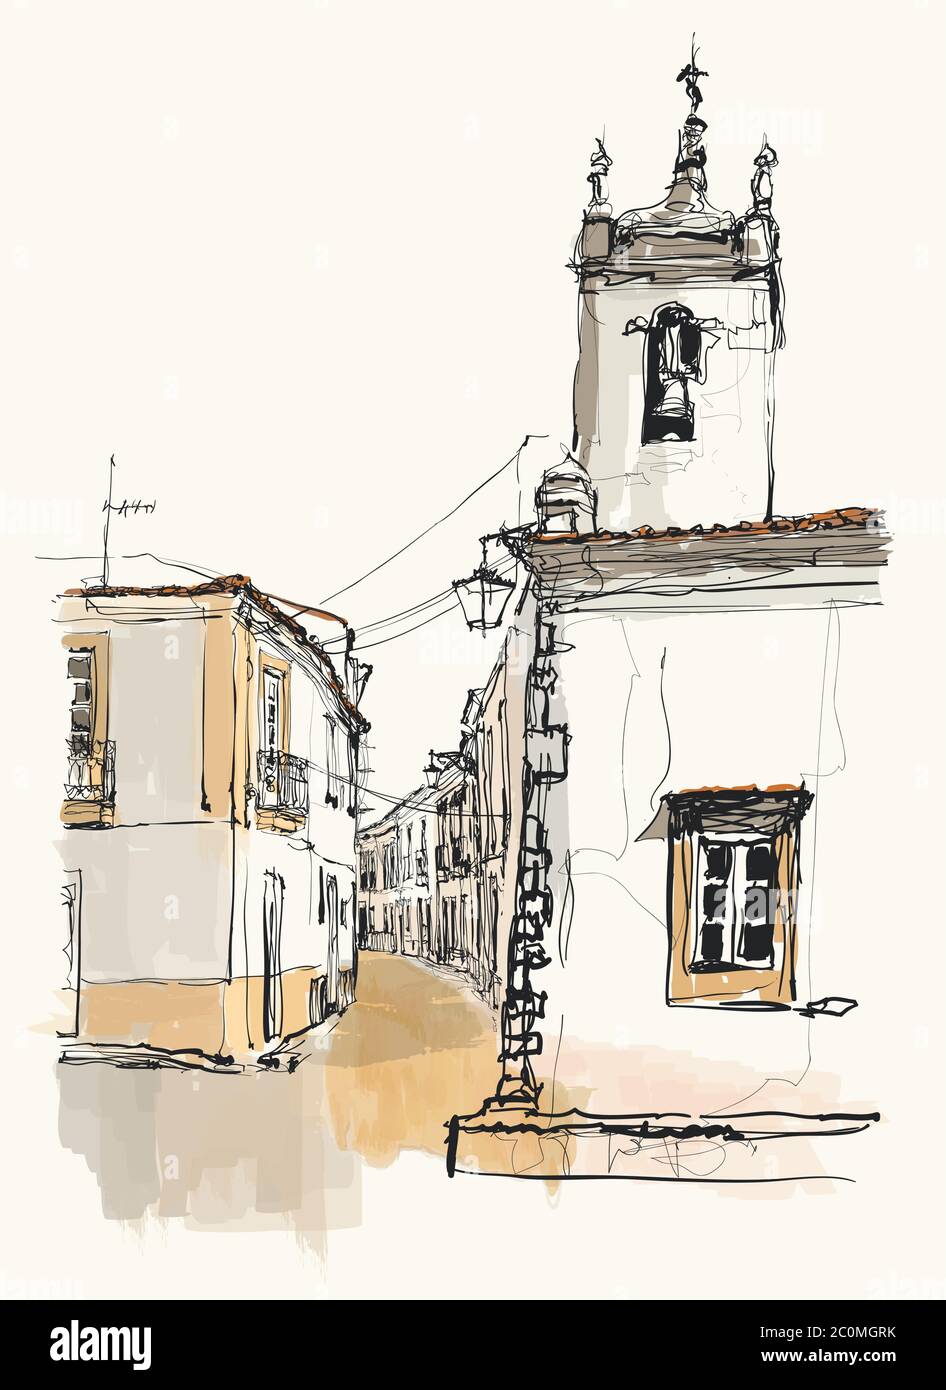 Calle estrecha típica en un pueblo de la región de Alentejo, Portugal - ilustración vectorial (ideal para imprimir en tela o papel, póster o papel pintado, ho Ilustración del Vector